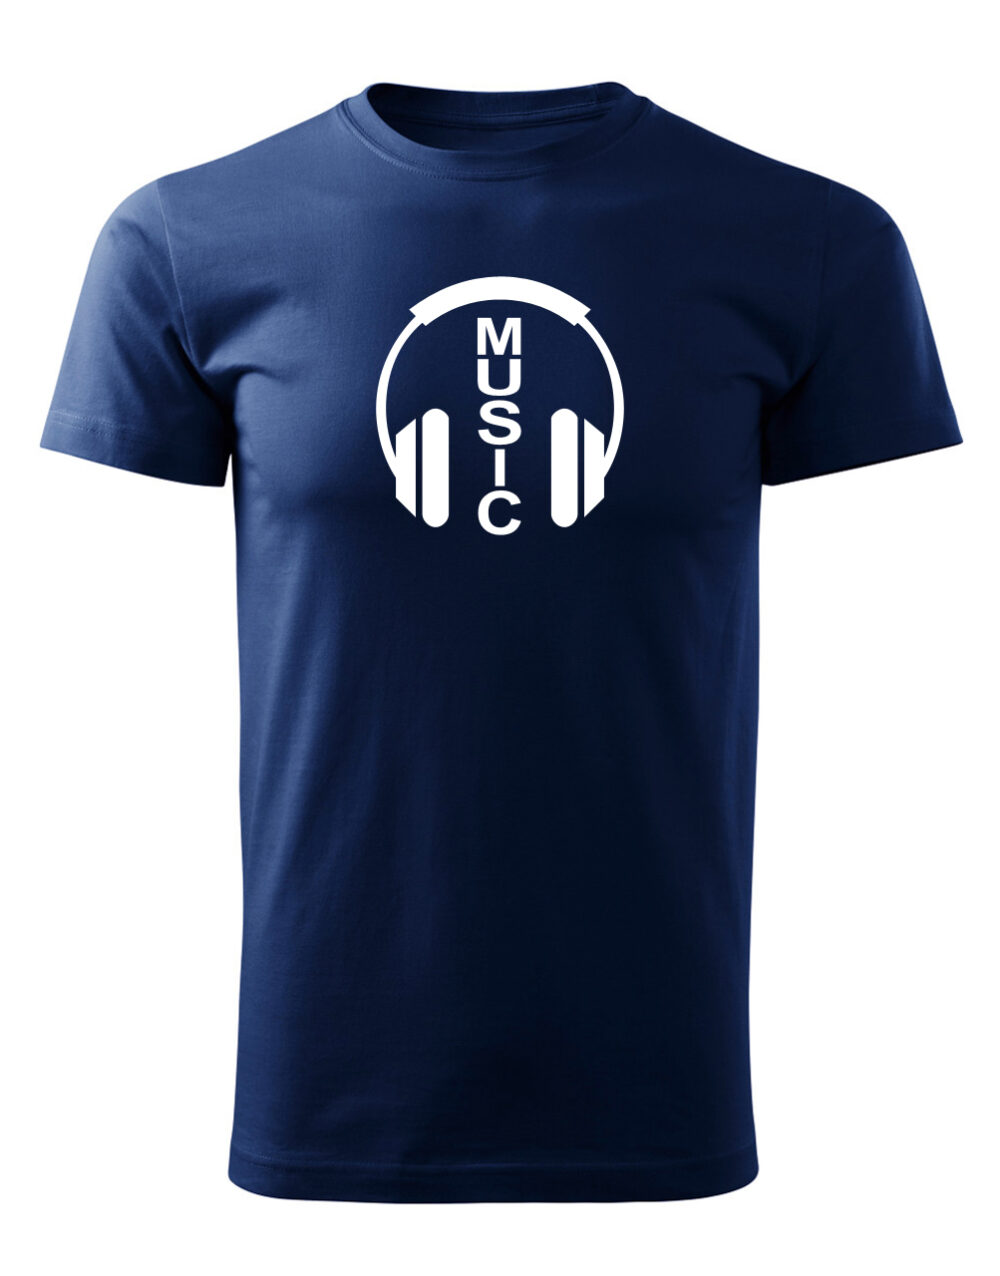 Pánské tričko s potiskem Music námořnická modrá